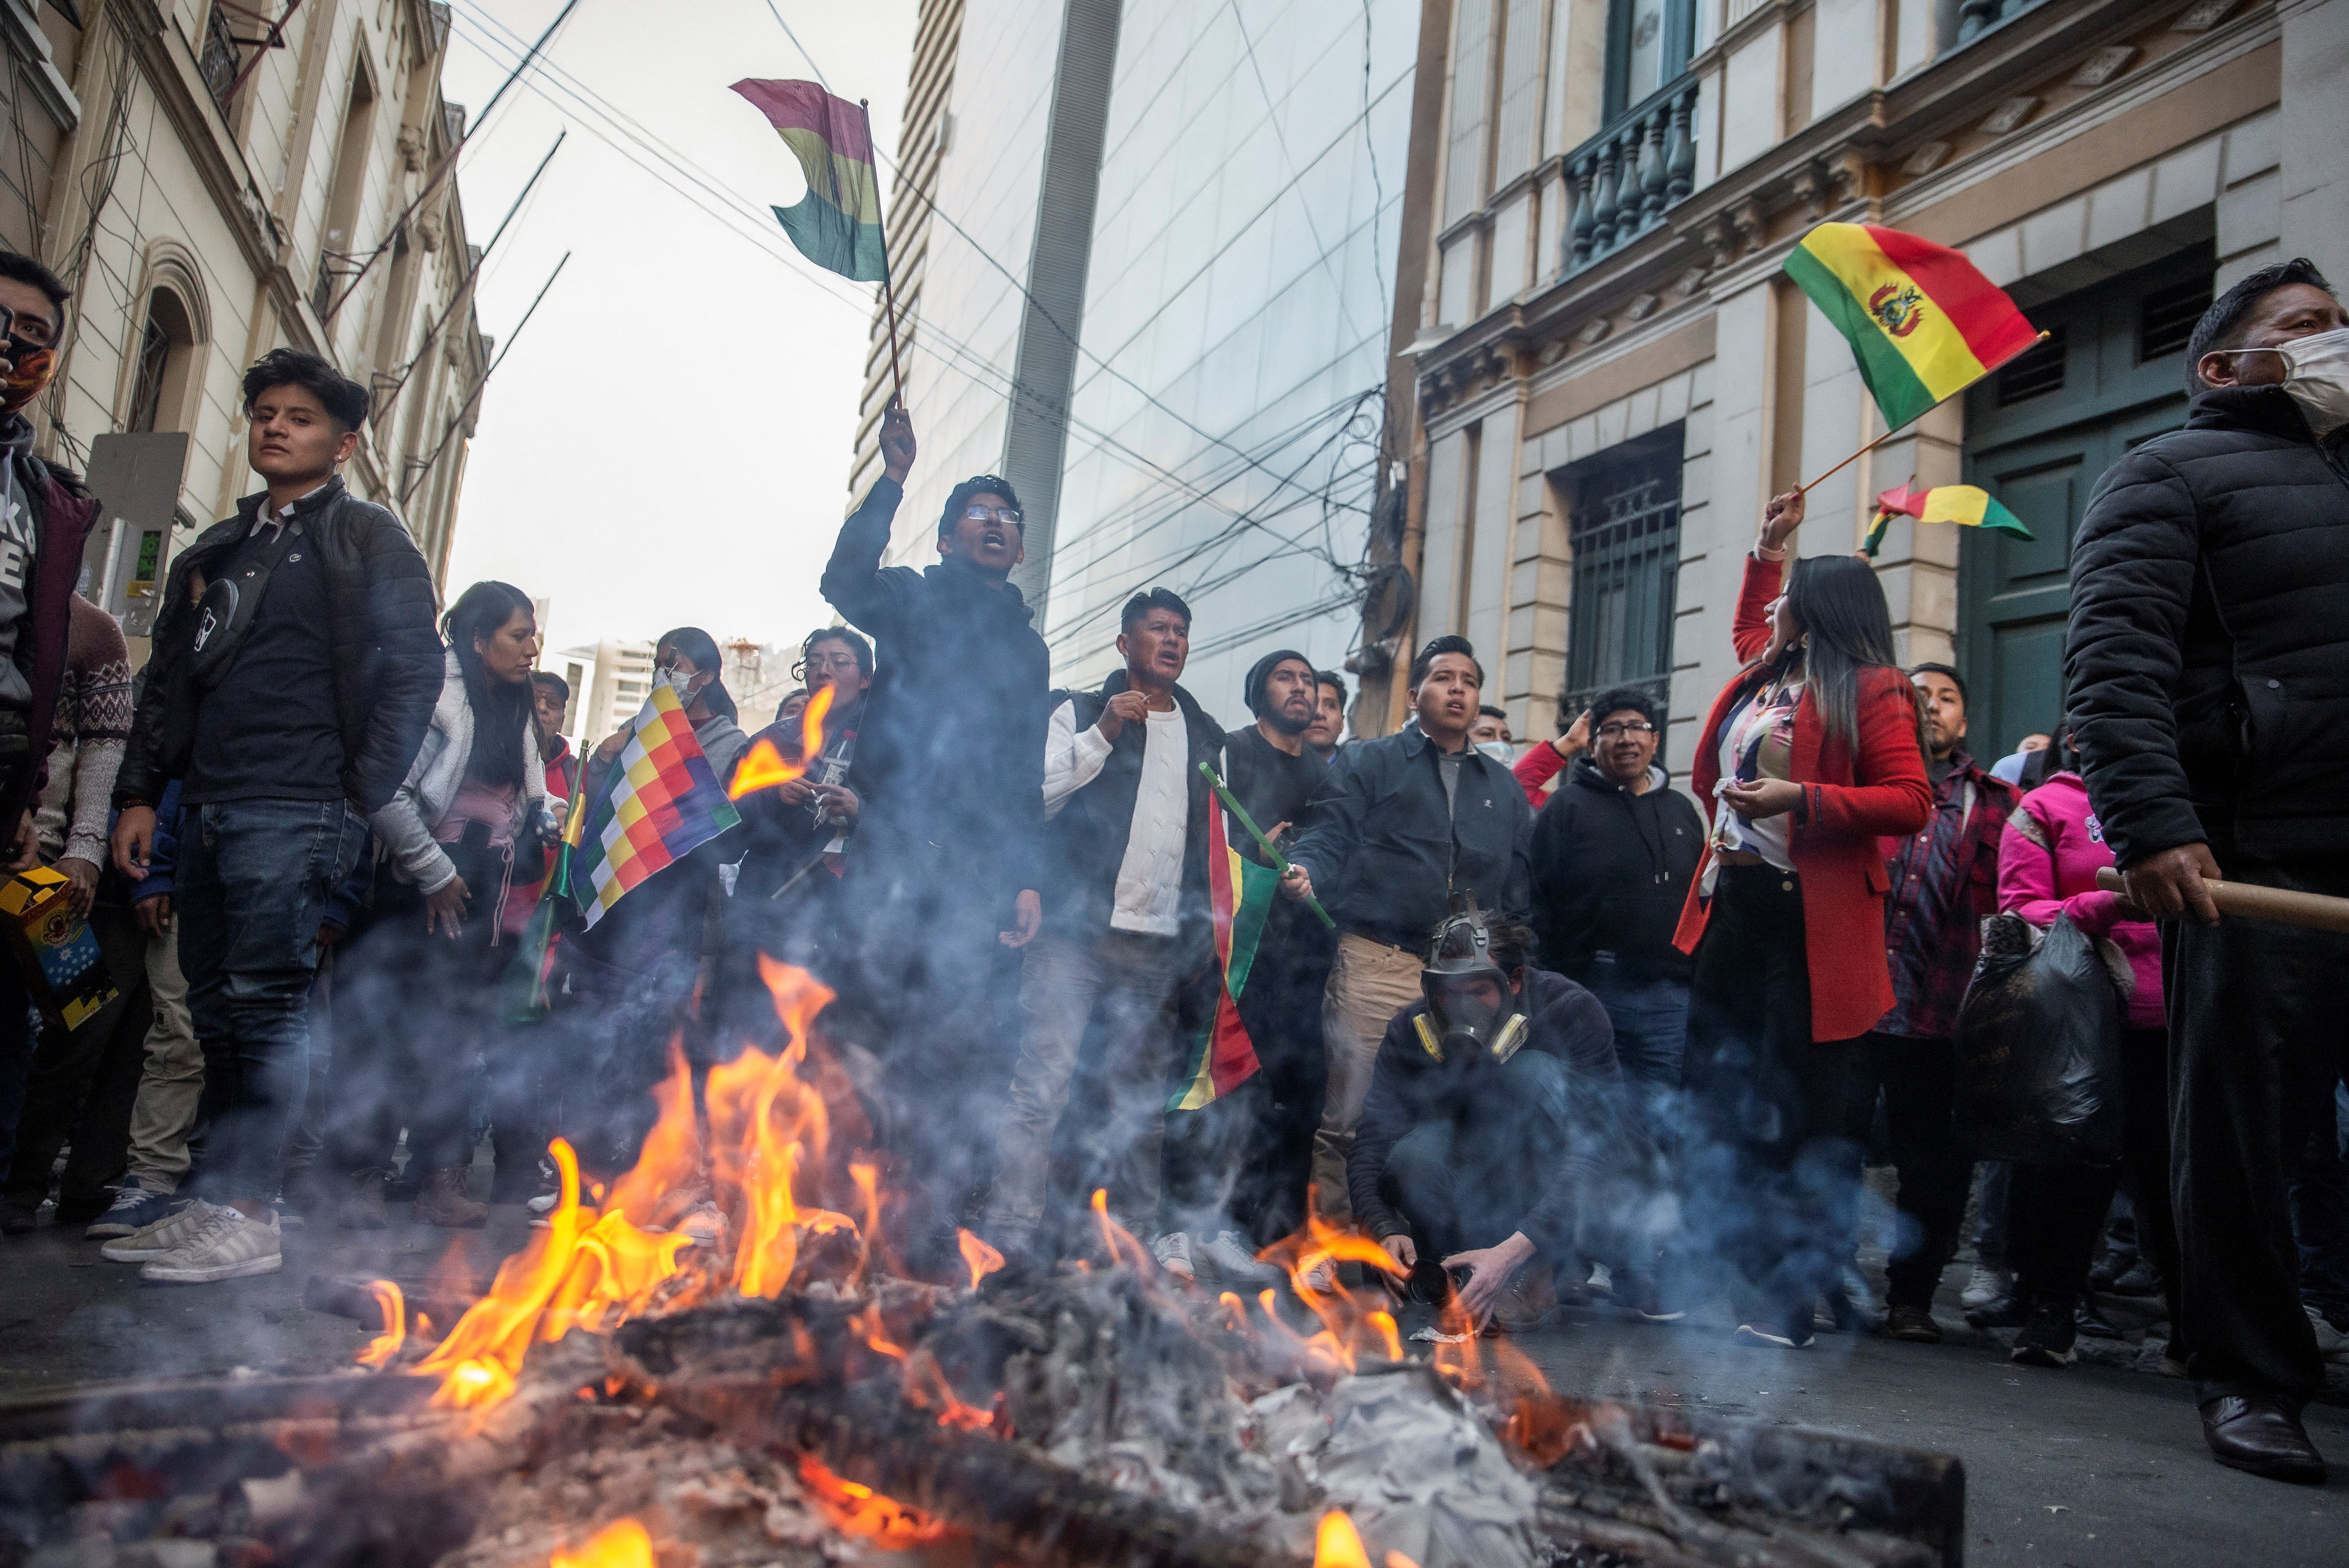 ボリビアのルイス・アルセ大統領政府に対する軍部隊によるクーデター未遂事件の際、人々がボリビアの国旗を振りながら憲兵隊に叫び声を上げている。